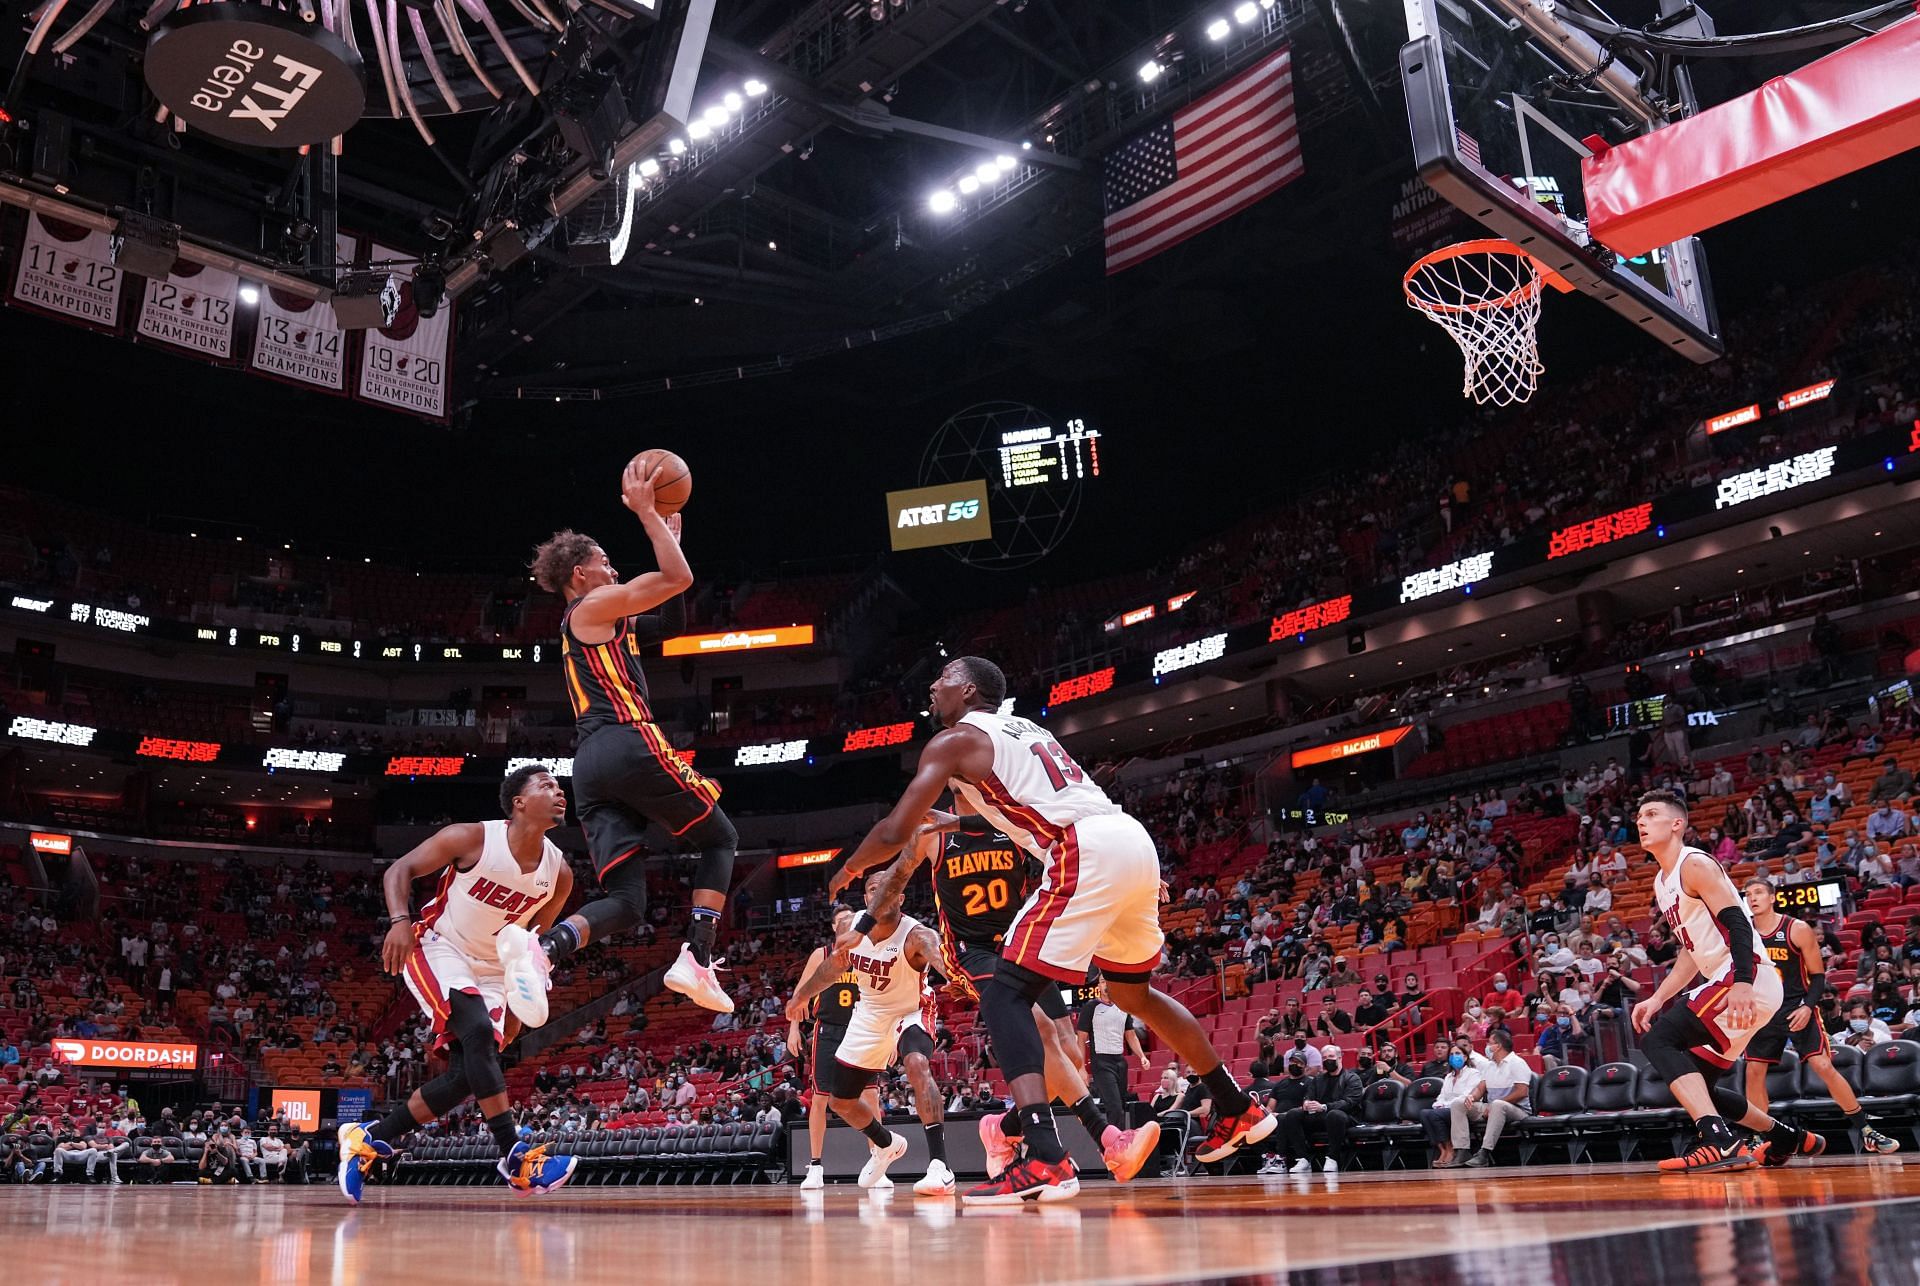 The Miami Heat will host the Atlanta Hawks on January 14th.